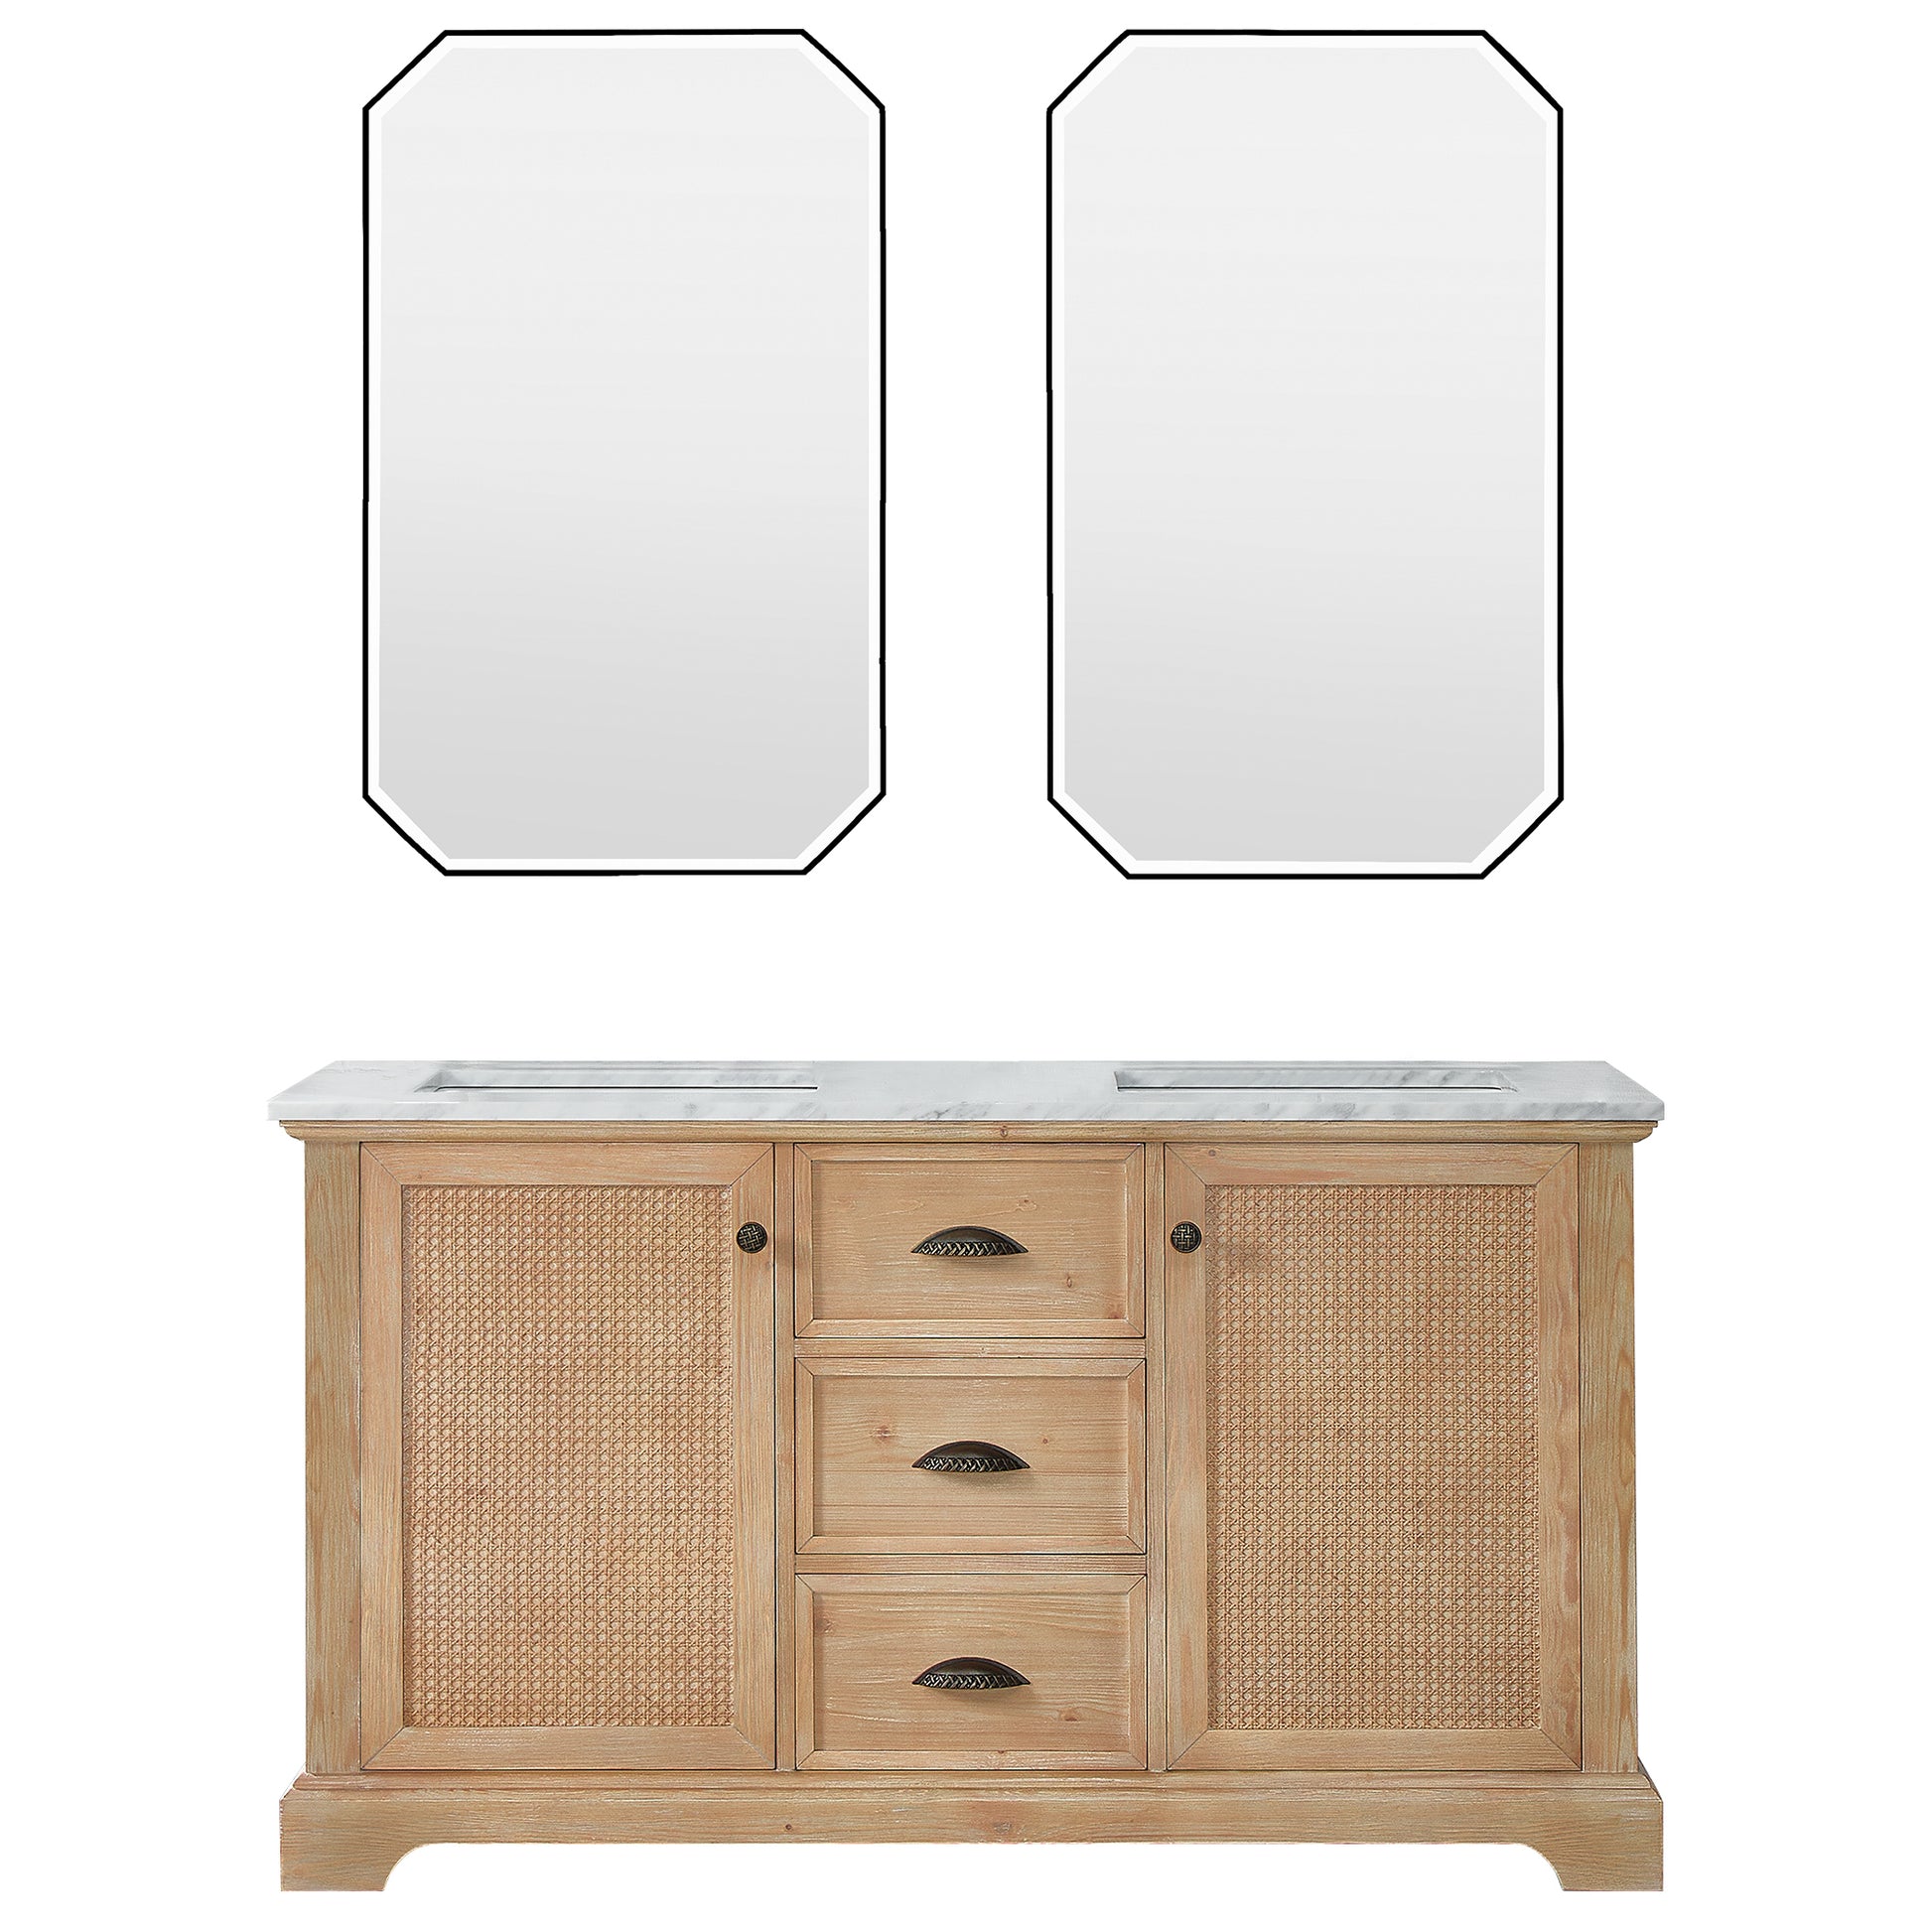 
  
  Hervas Double Sink Vanity | 60", 72" | White Marble, Black Marble Top | Fir Wood | Optional Mirror
  
